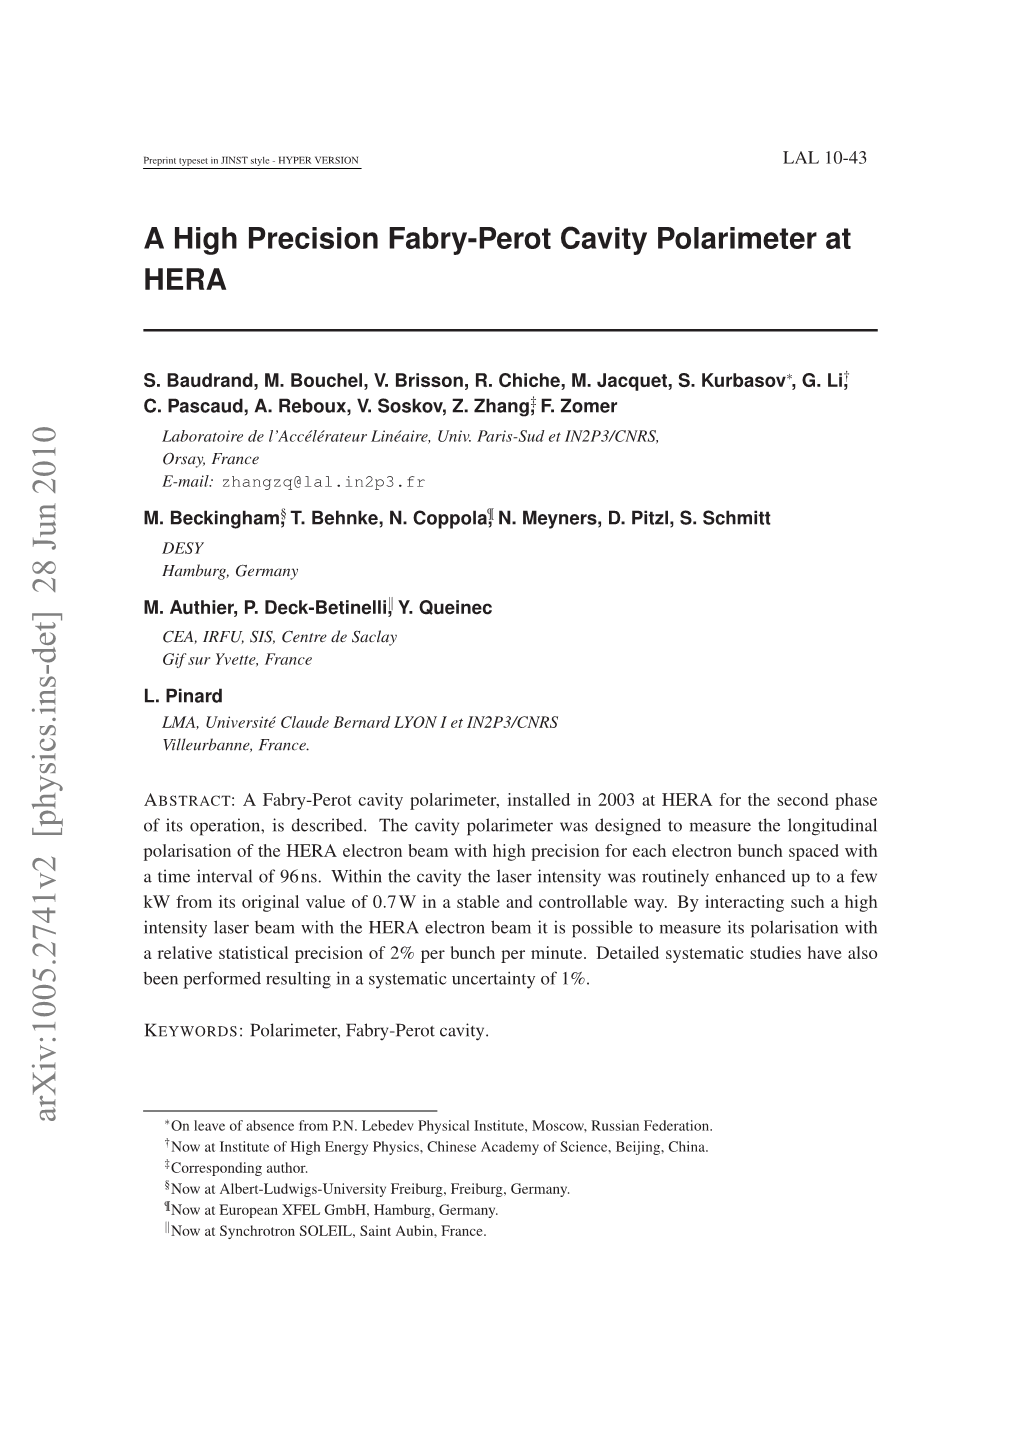 A High Precision Fabry-Perot Cavity Polarimeter at HERA